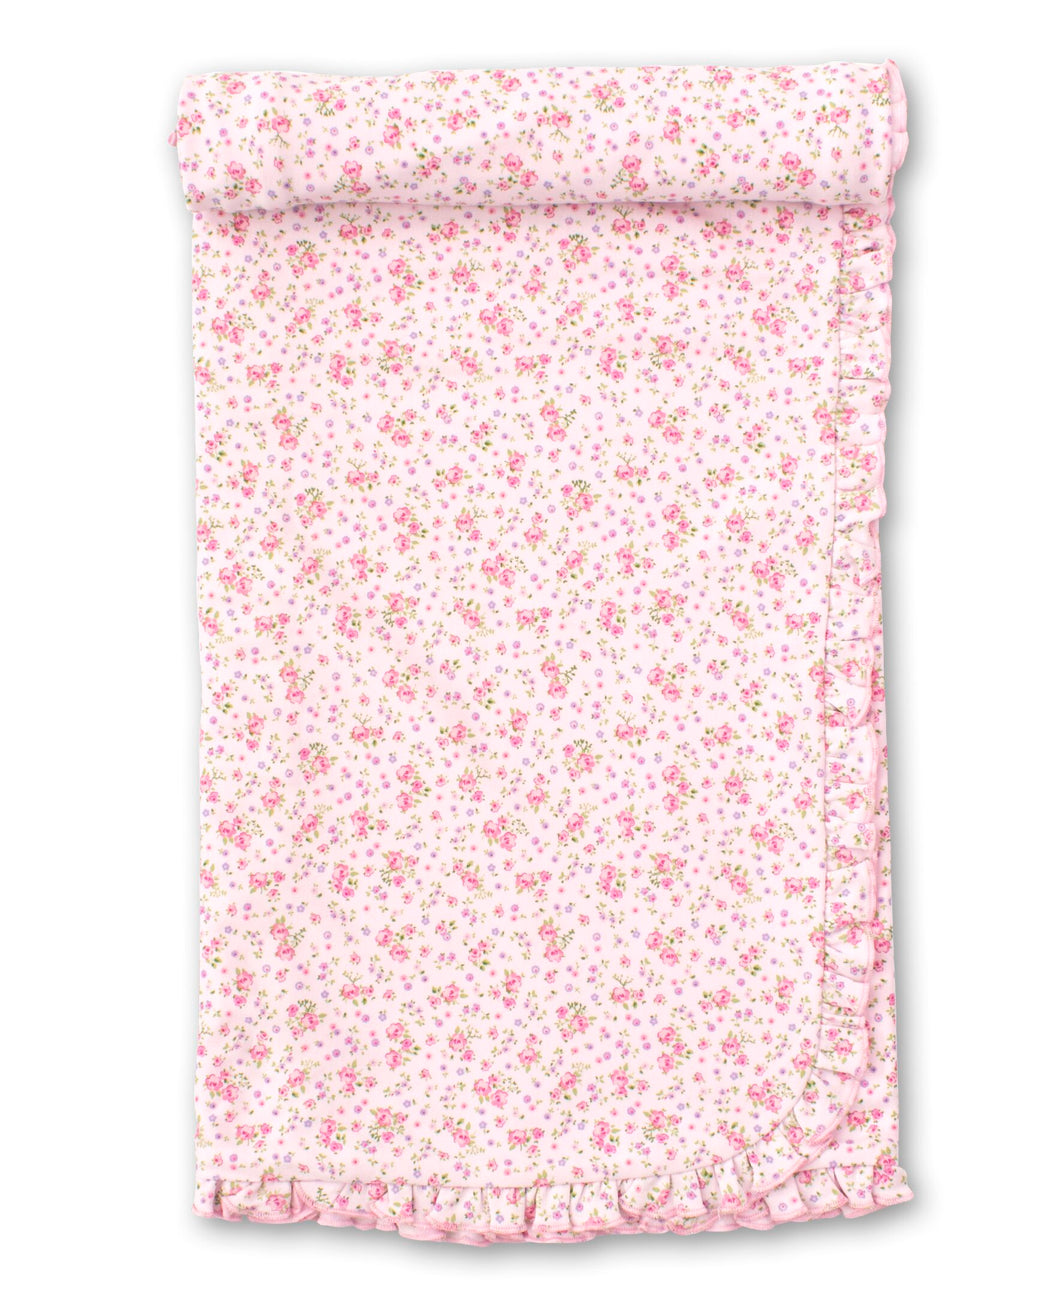 Dusty Rose Blanket  - Pink Print